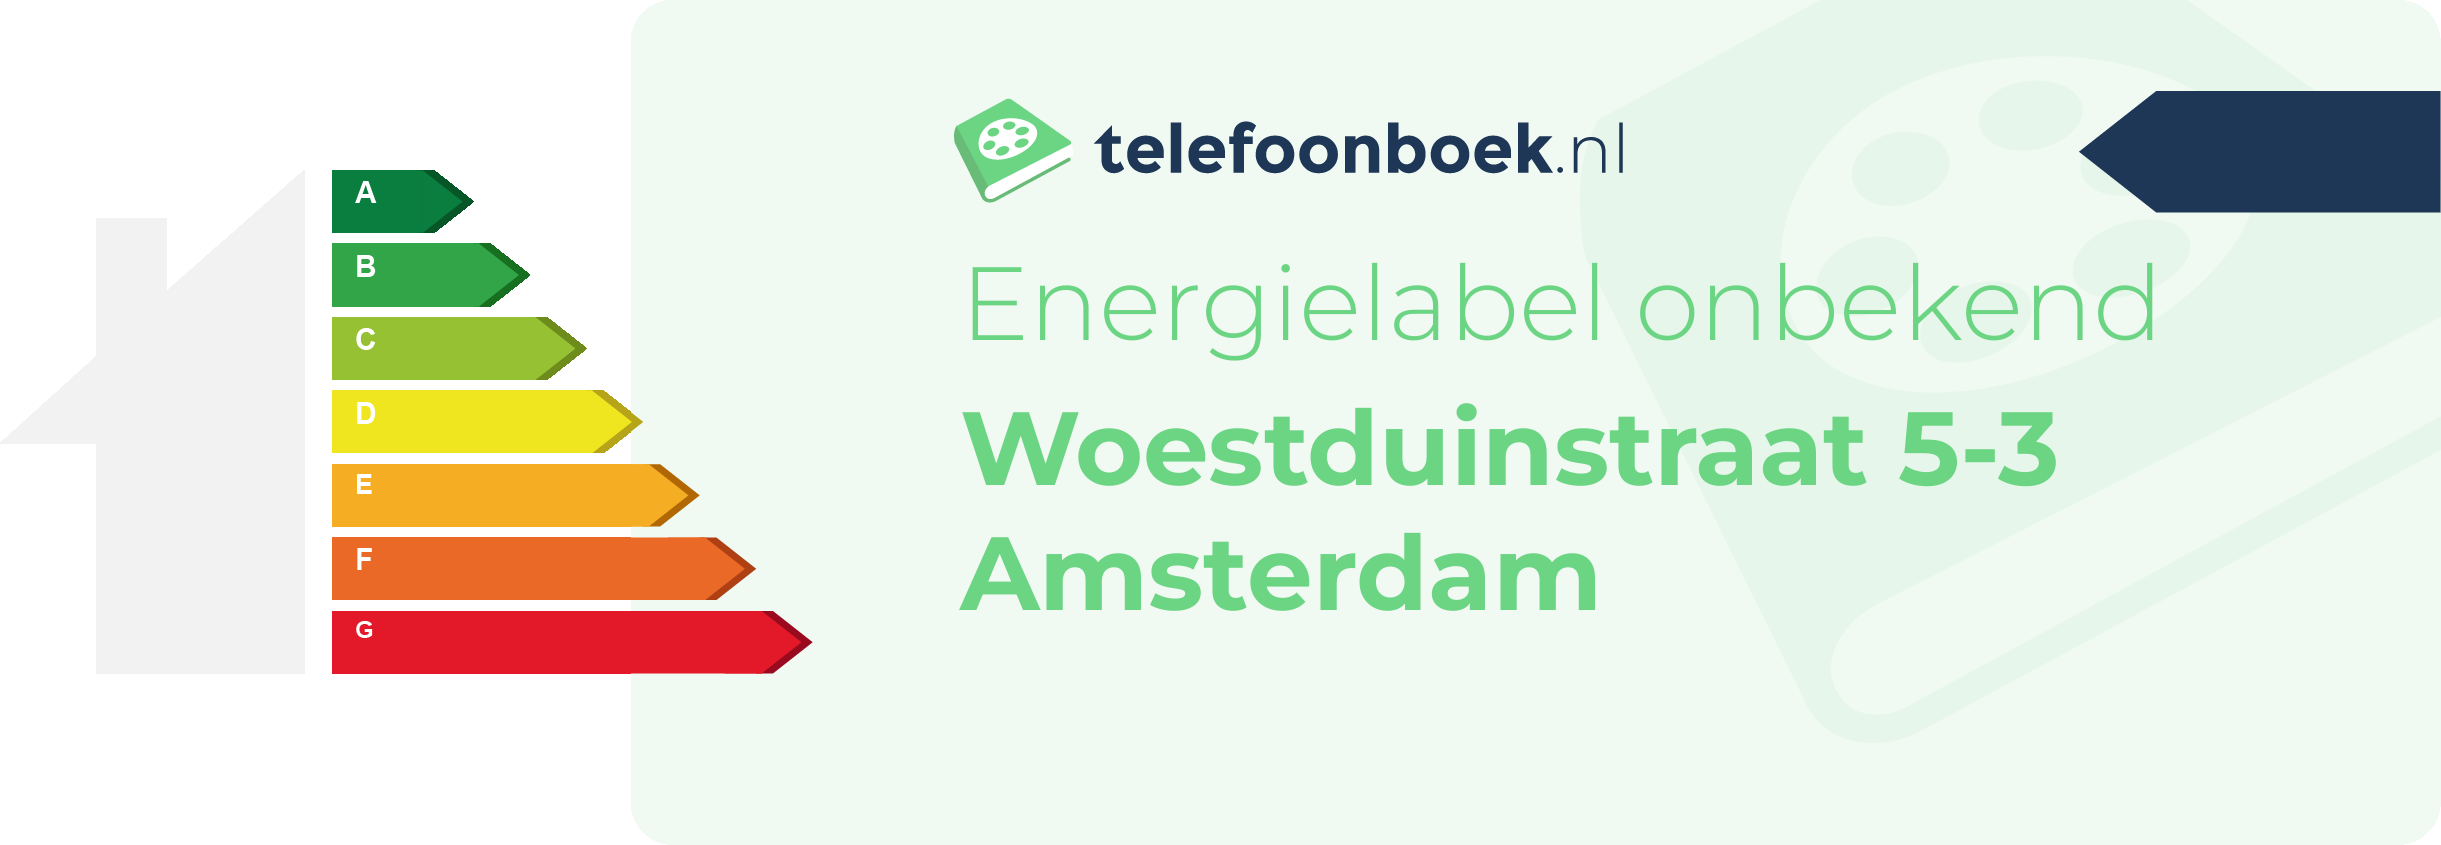 Energielabel Woestduinstraat 5-3 Amsterdam